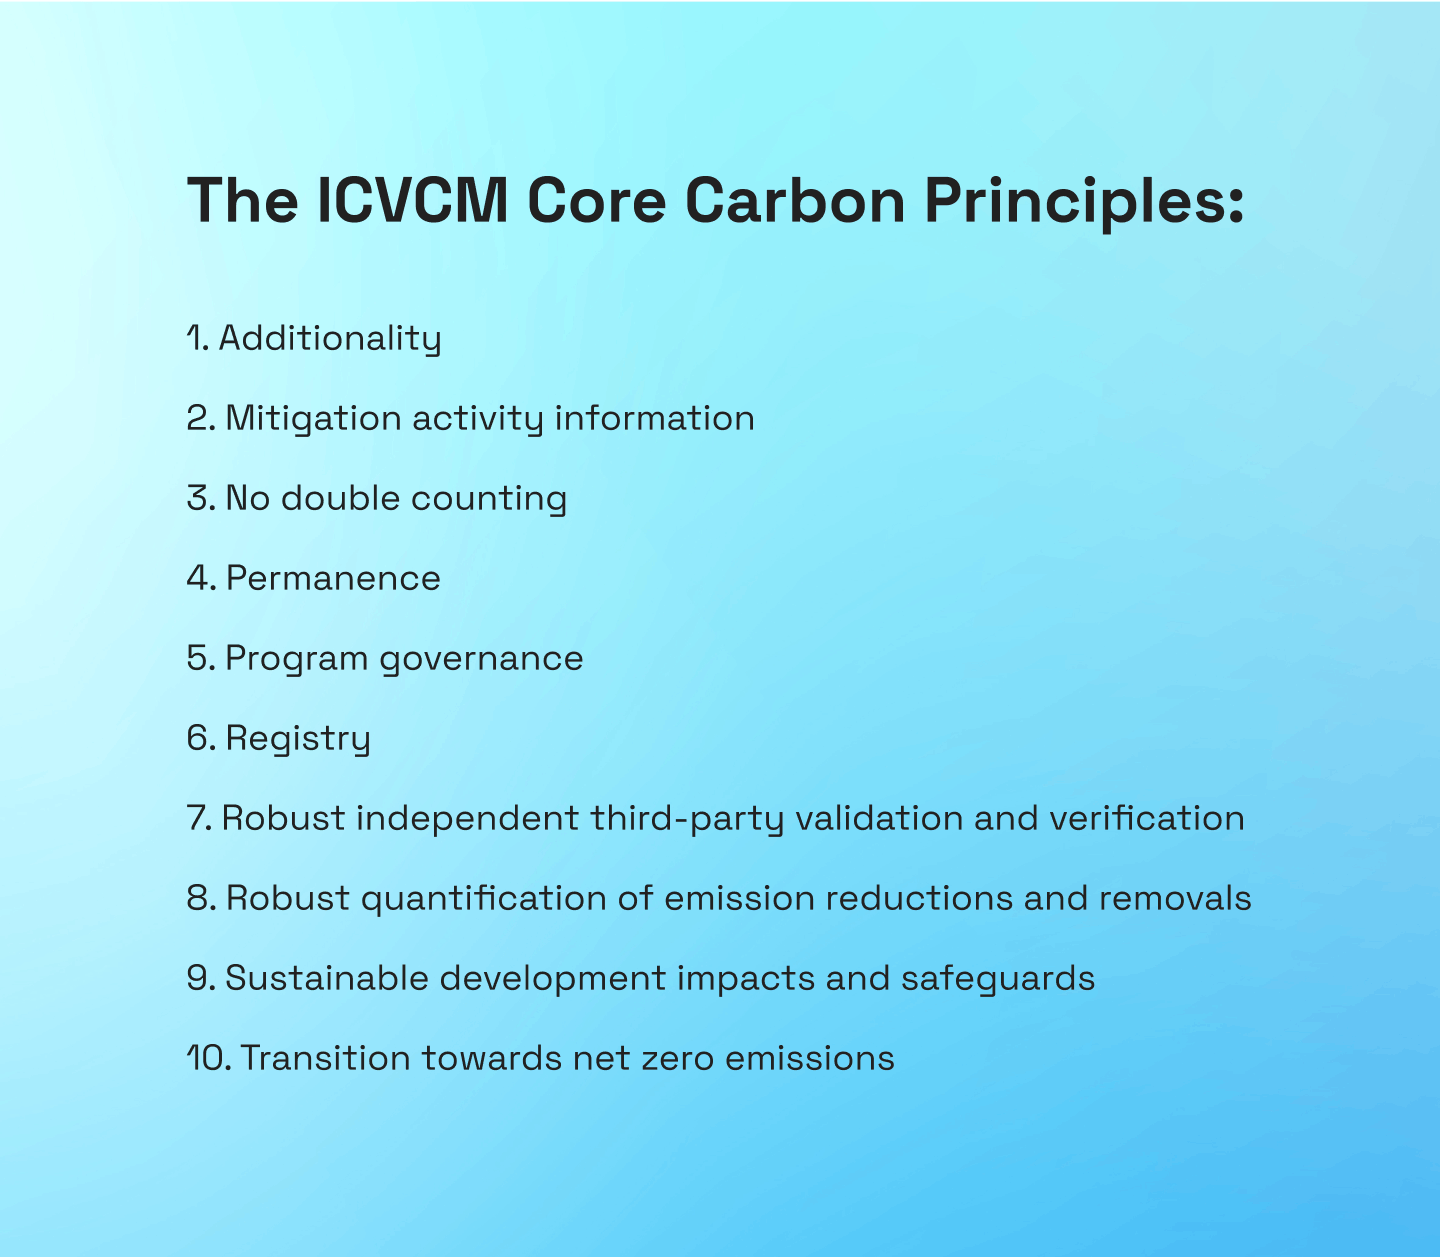 The ICVCM core carbon principles